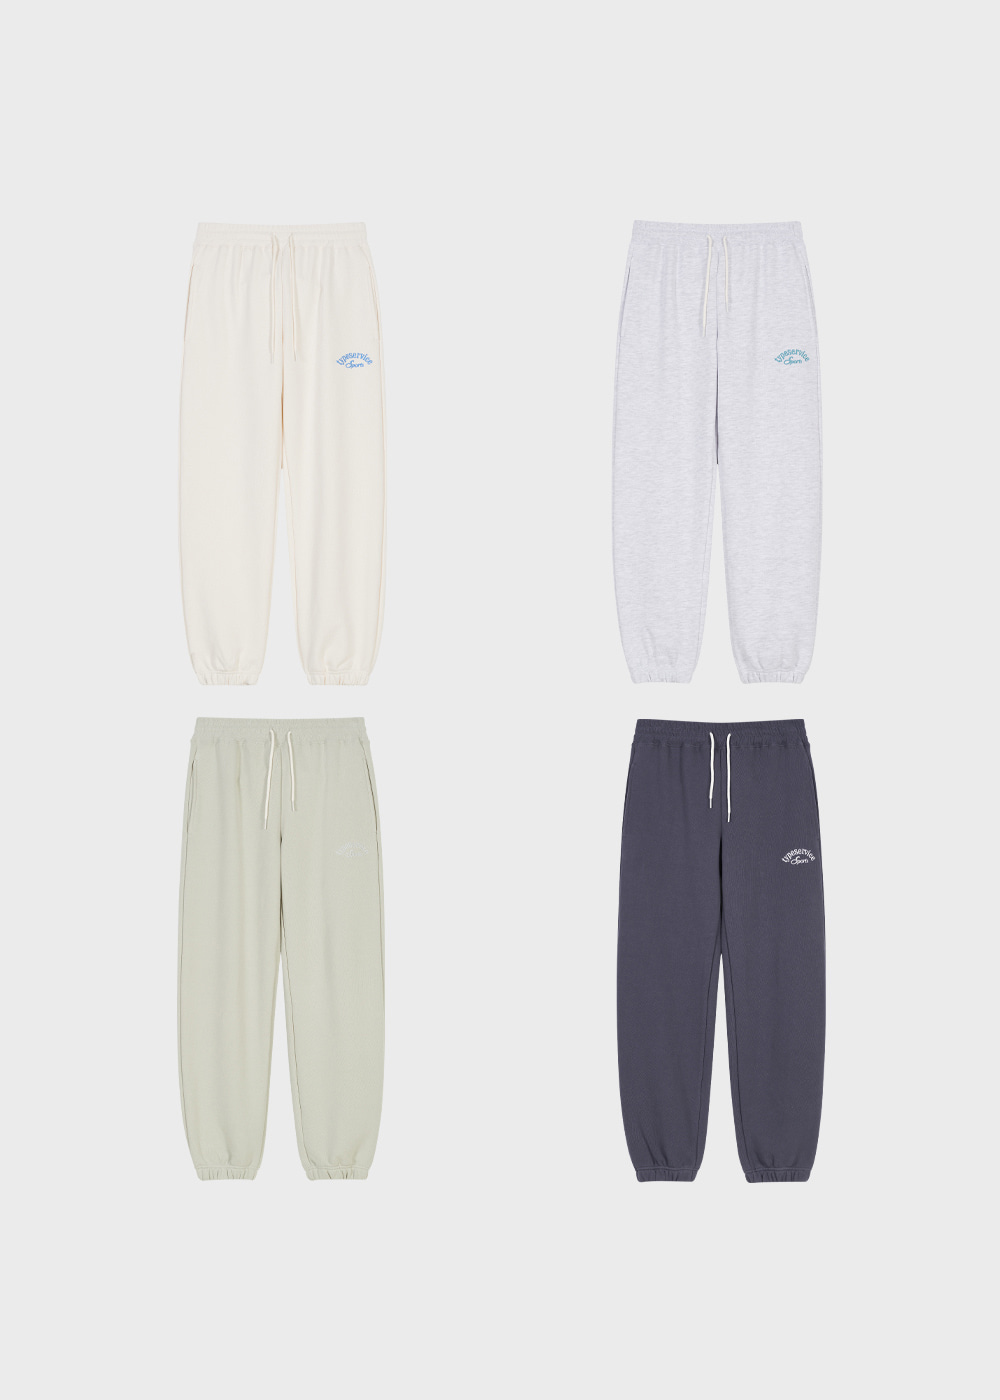 Sports Basic Sweatpants [4 Colors]